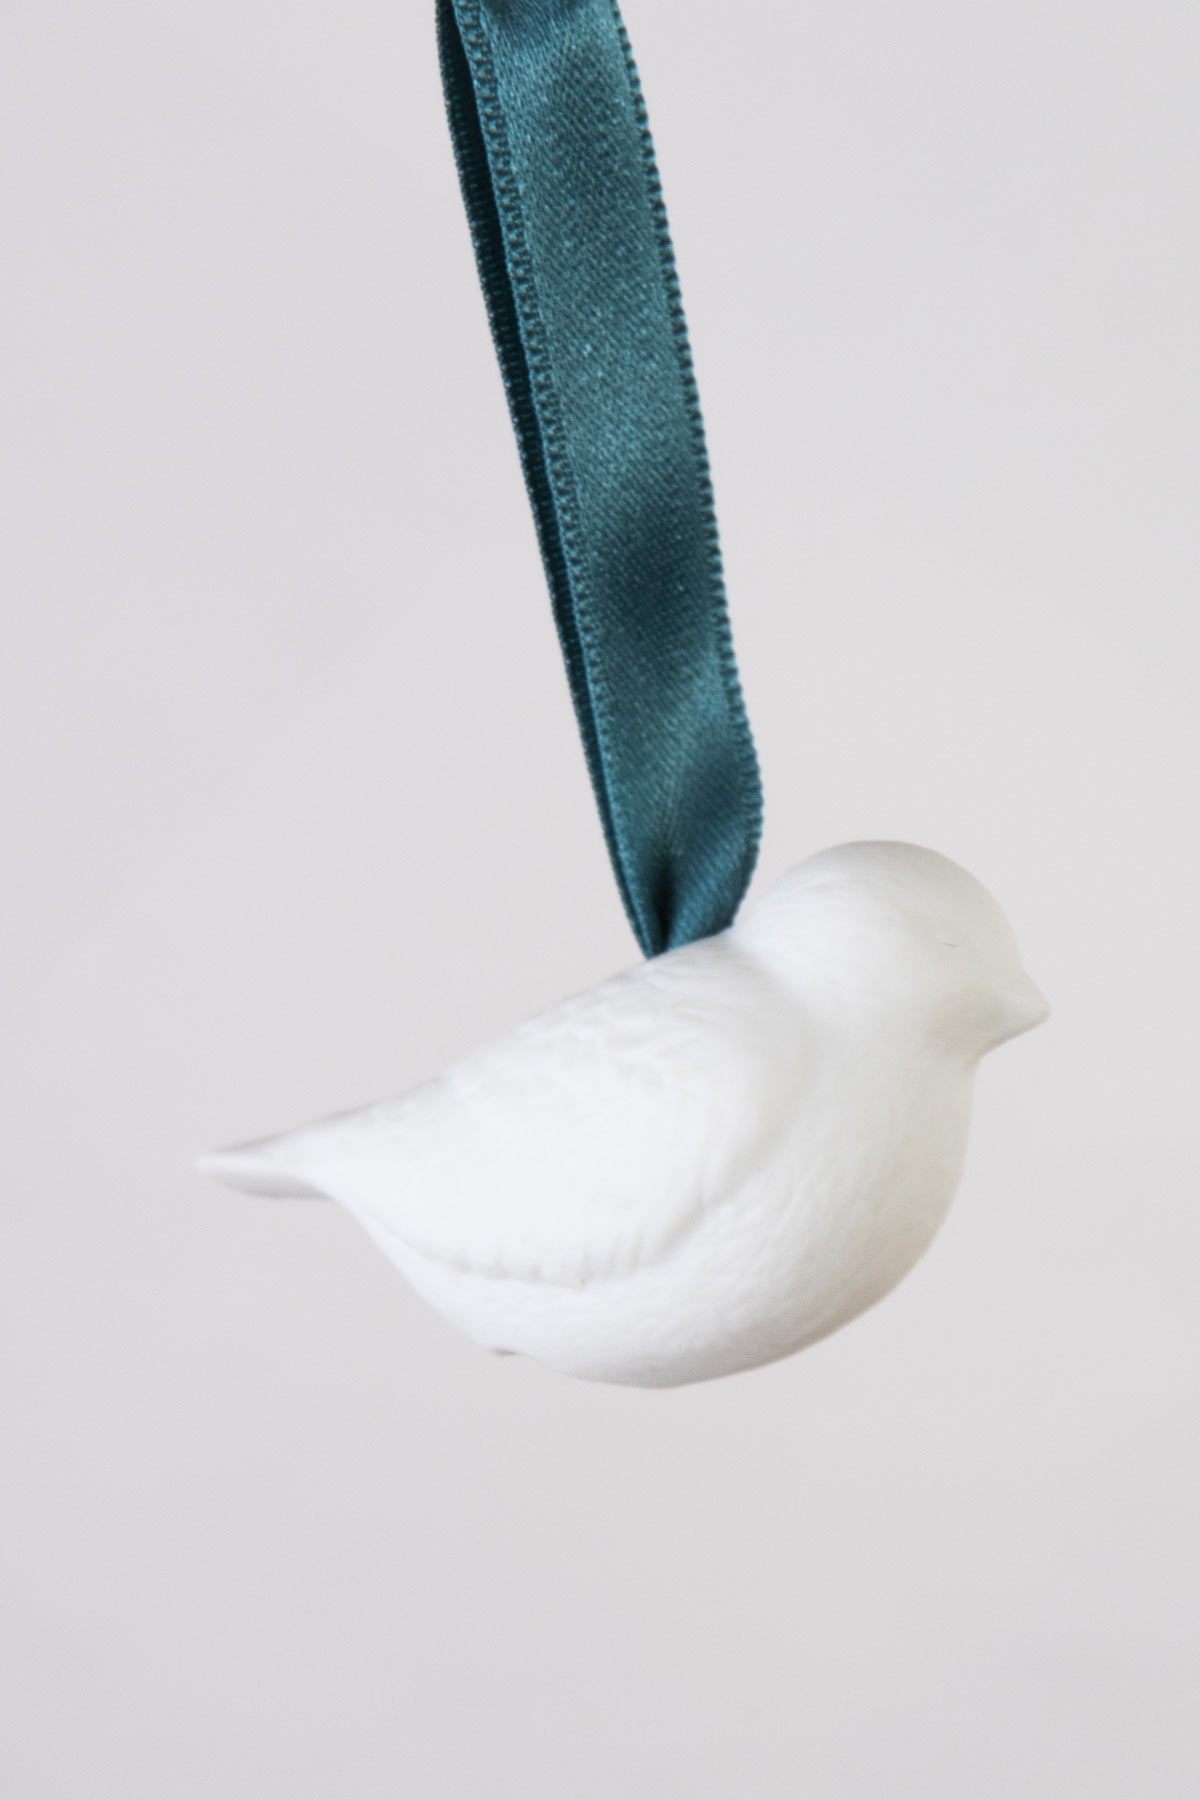 https://latelierdublanc.com/wp-content/uploads/2020/11/boule-de-noel-oiseau-grand-deco-porcelaine-de-limoges-l-atelier-du-blanc.jpg